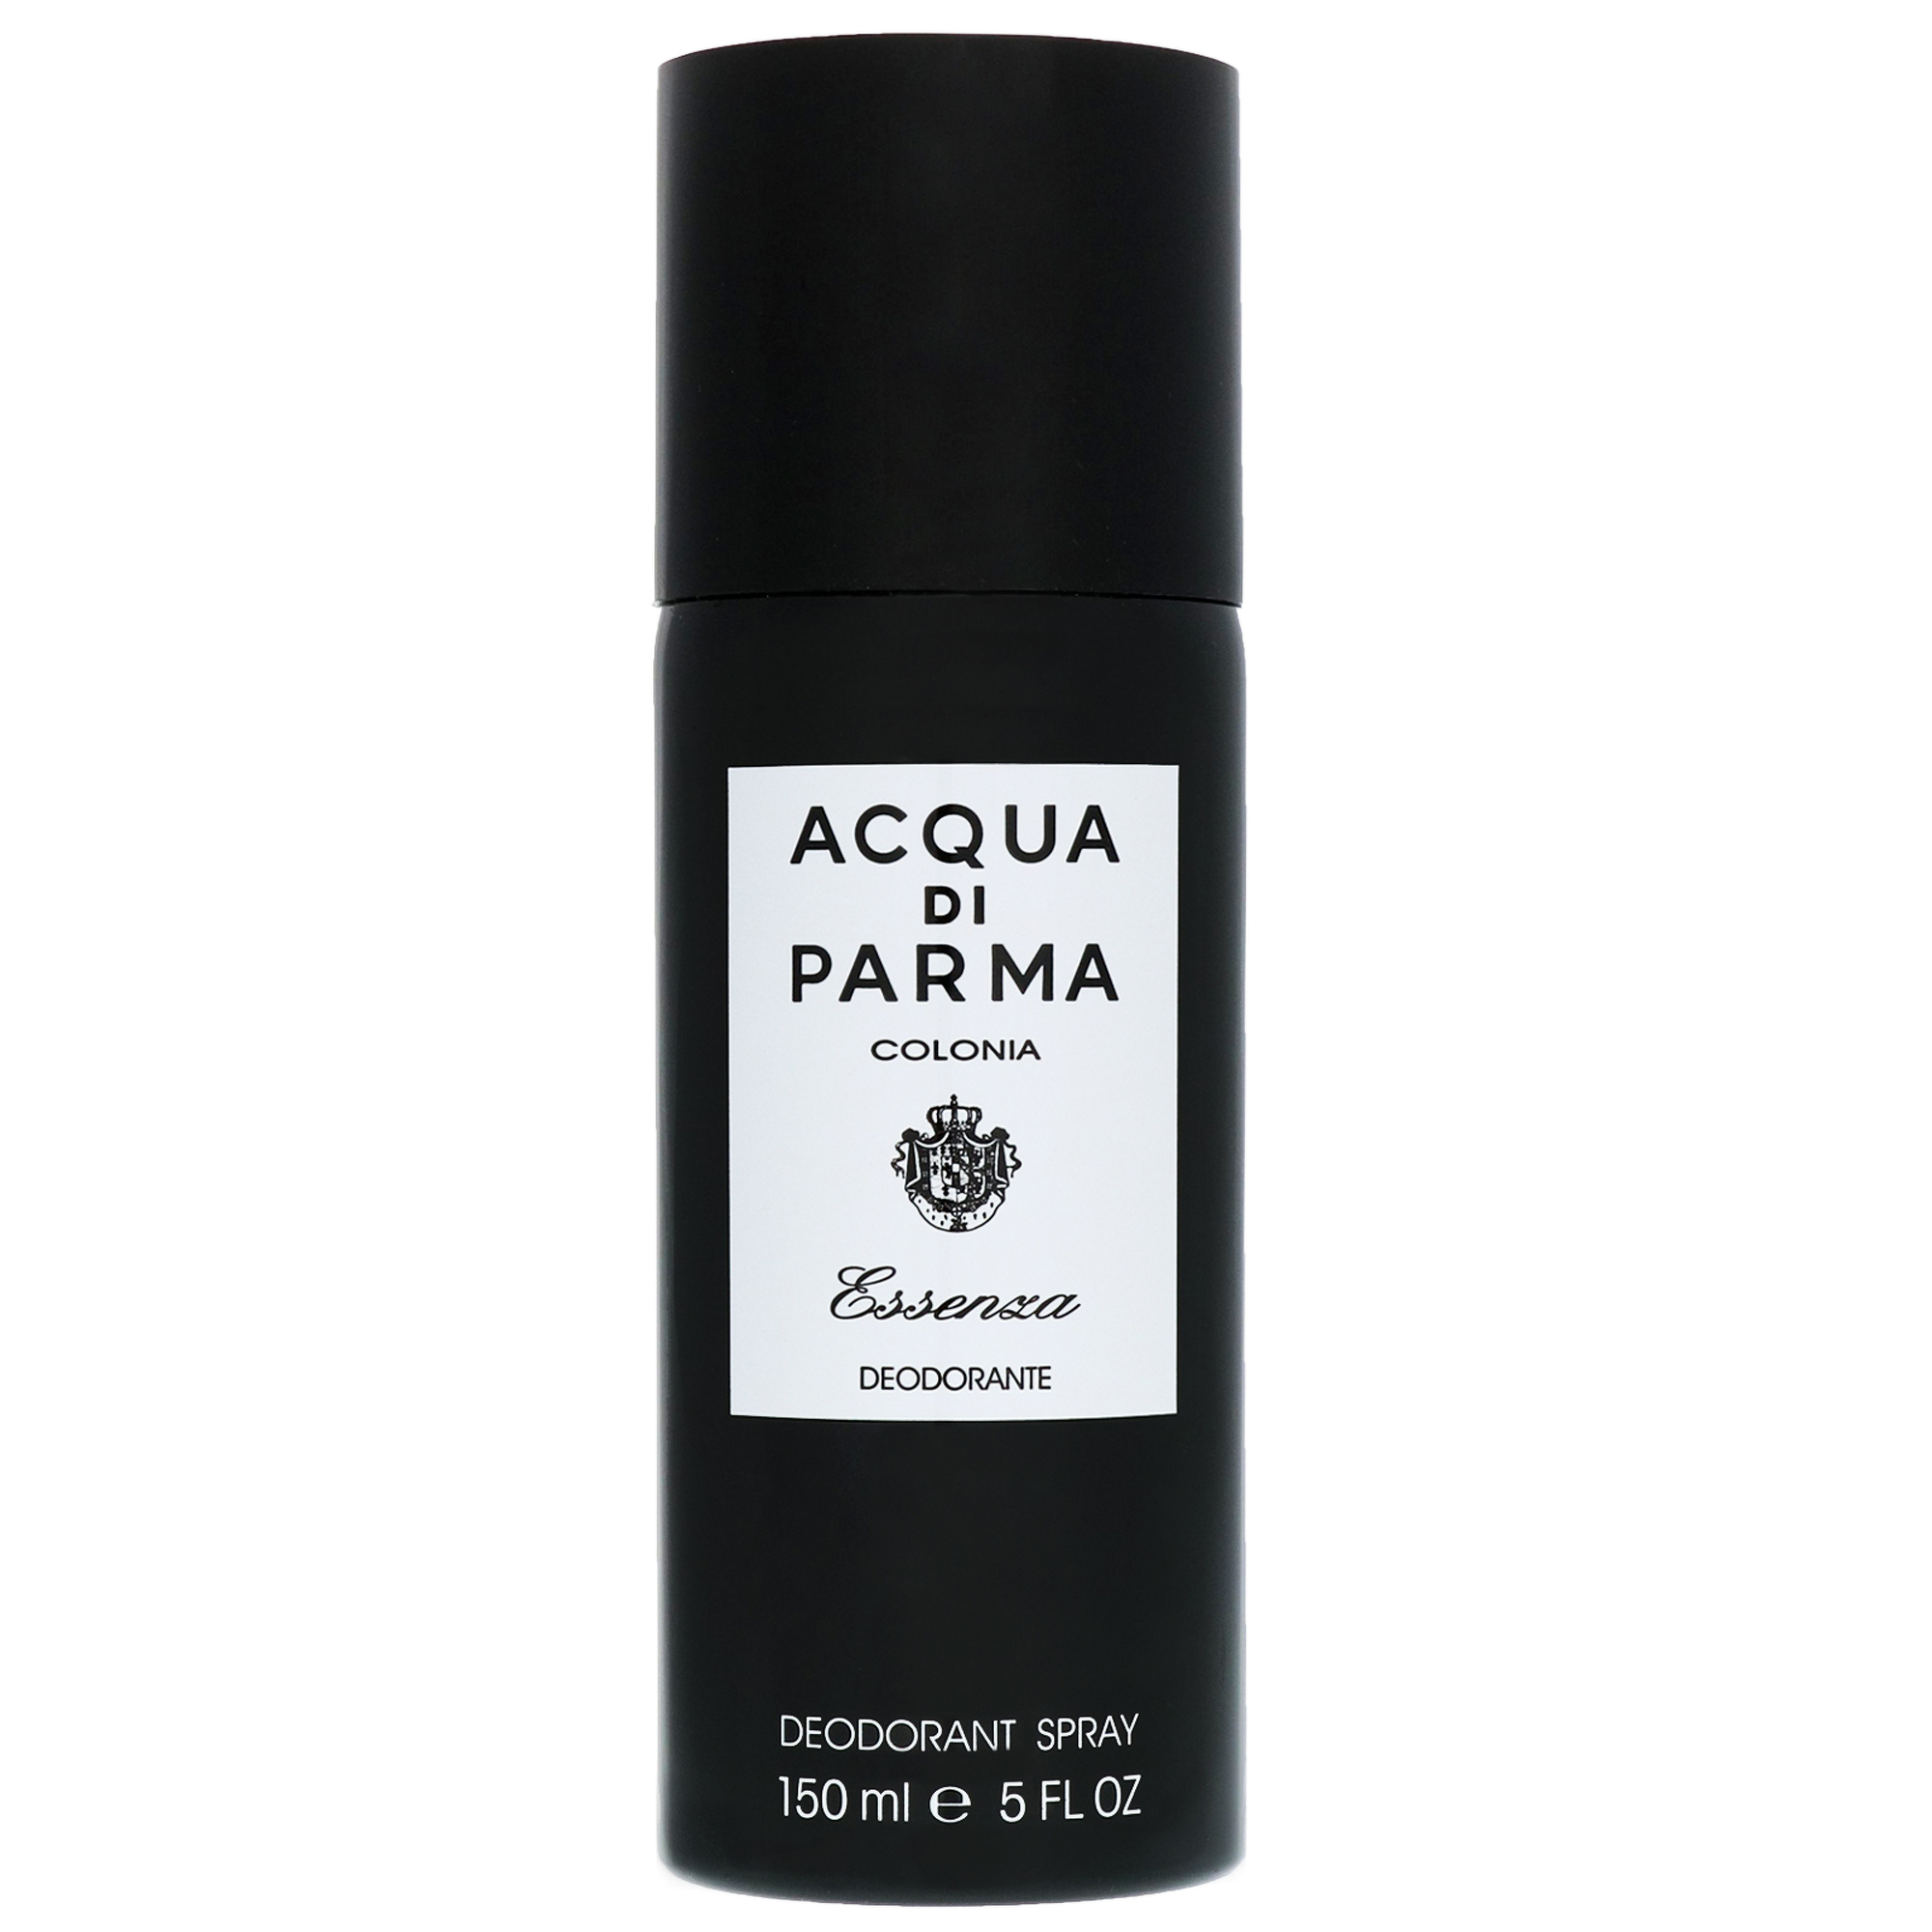 Image of Acqua Di Parma Colonia Essenza Deodorant Spray 150ml